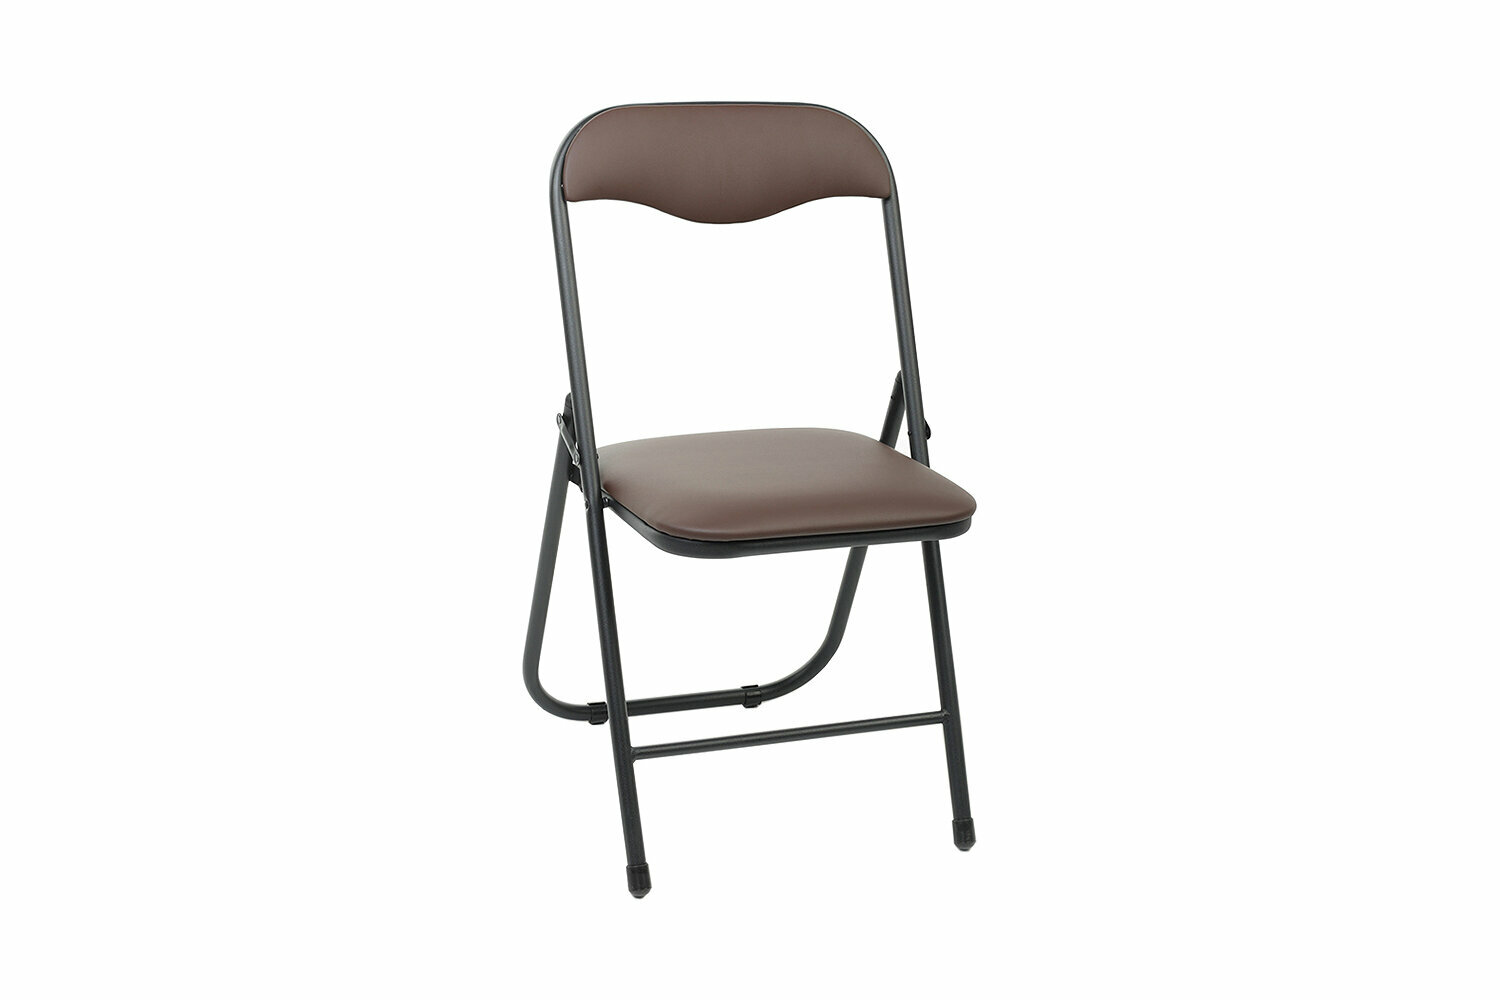 Складной стул со спинкой Экспресс офис РС01.00.04, для дома, обивка: экокожа